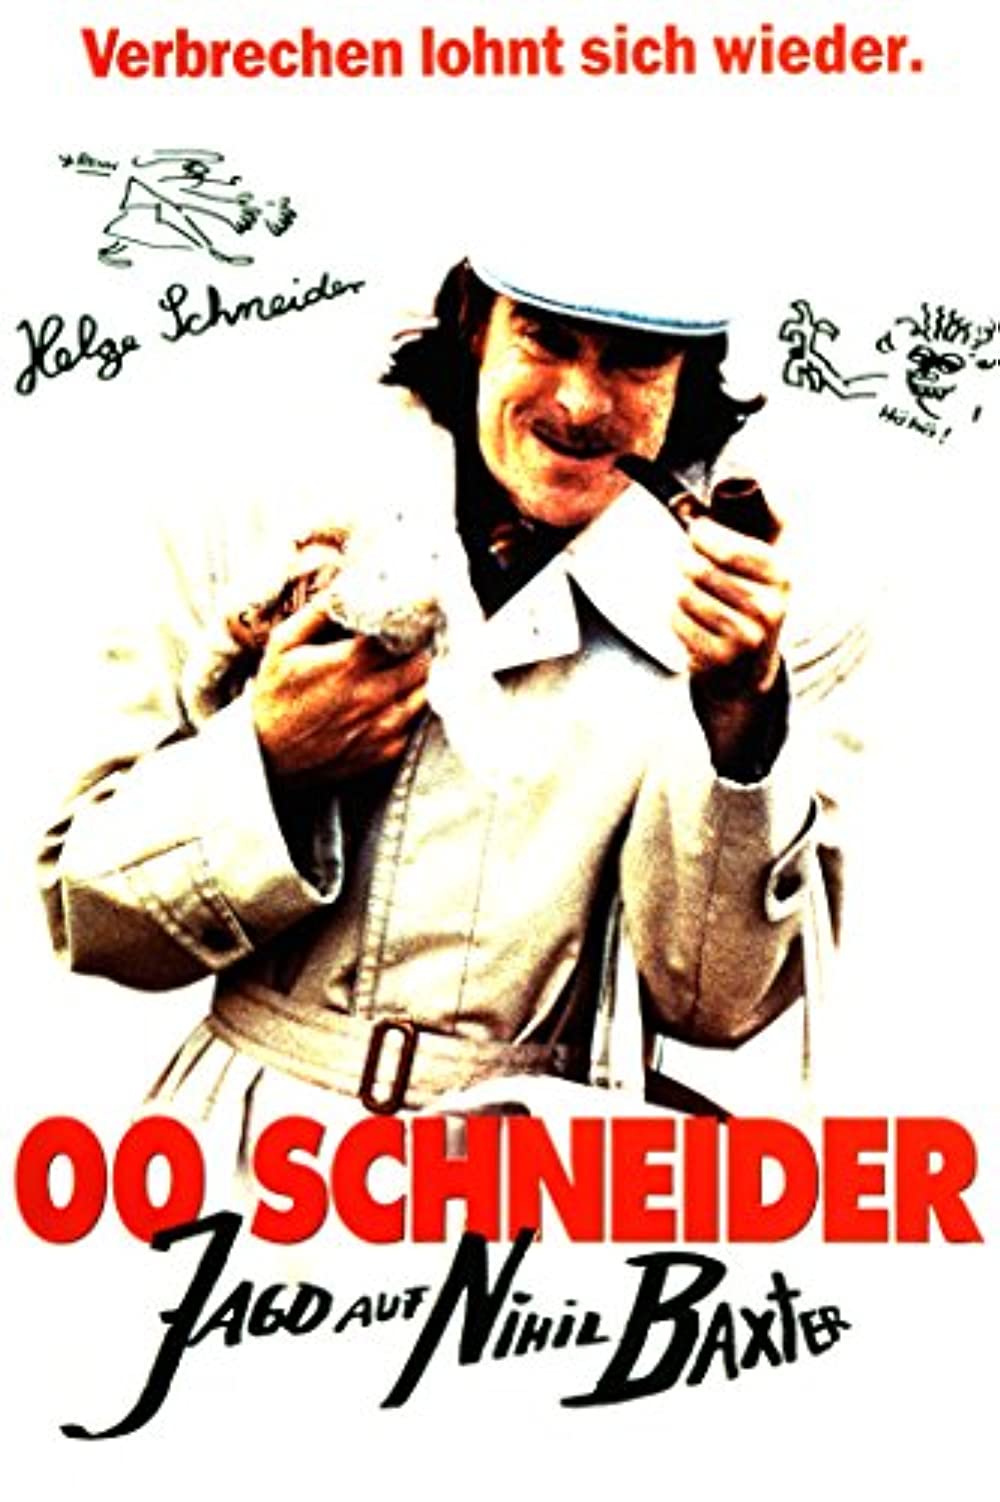 Filmbeschreibung zu 00 Schneider - Jagd auf Nihil Baxter